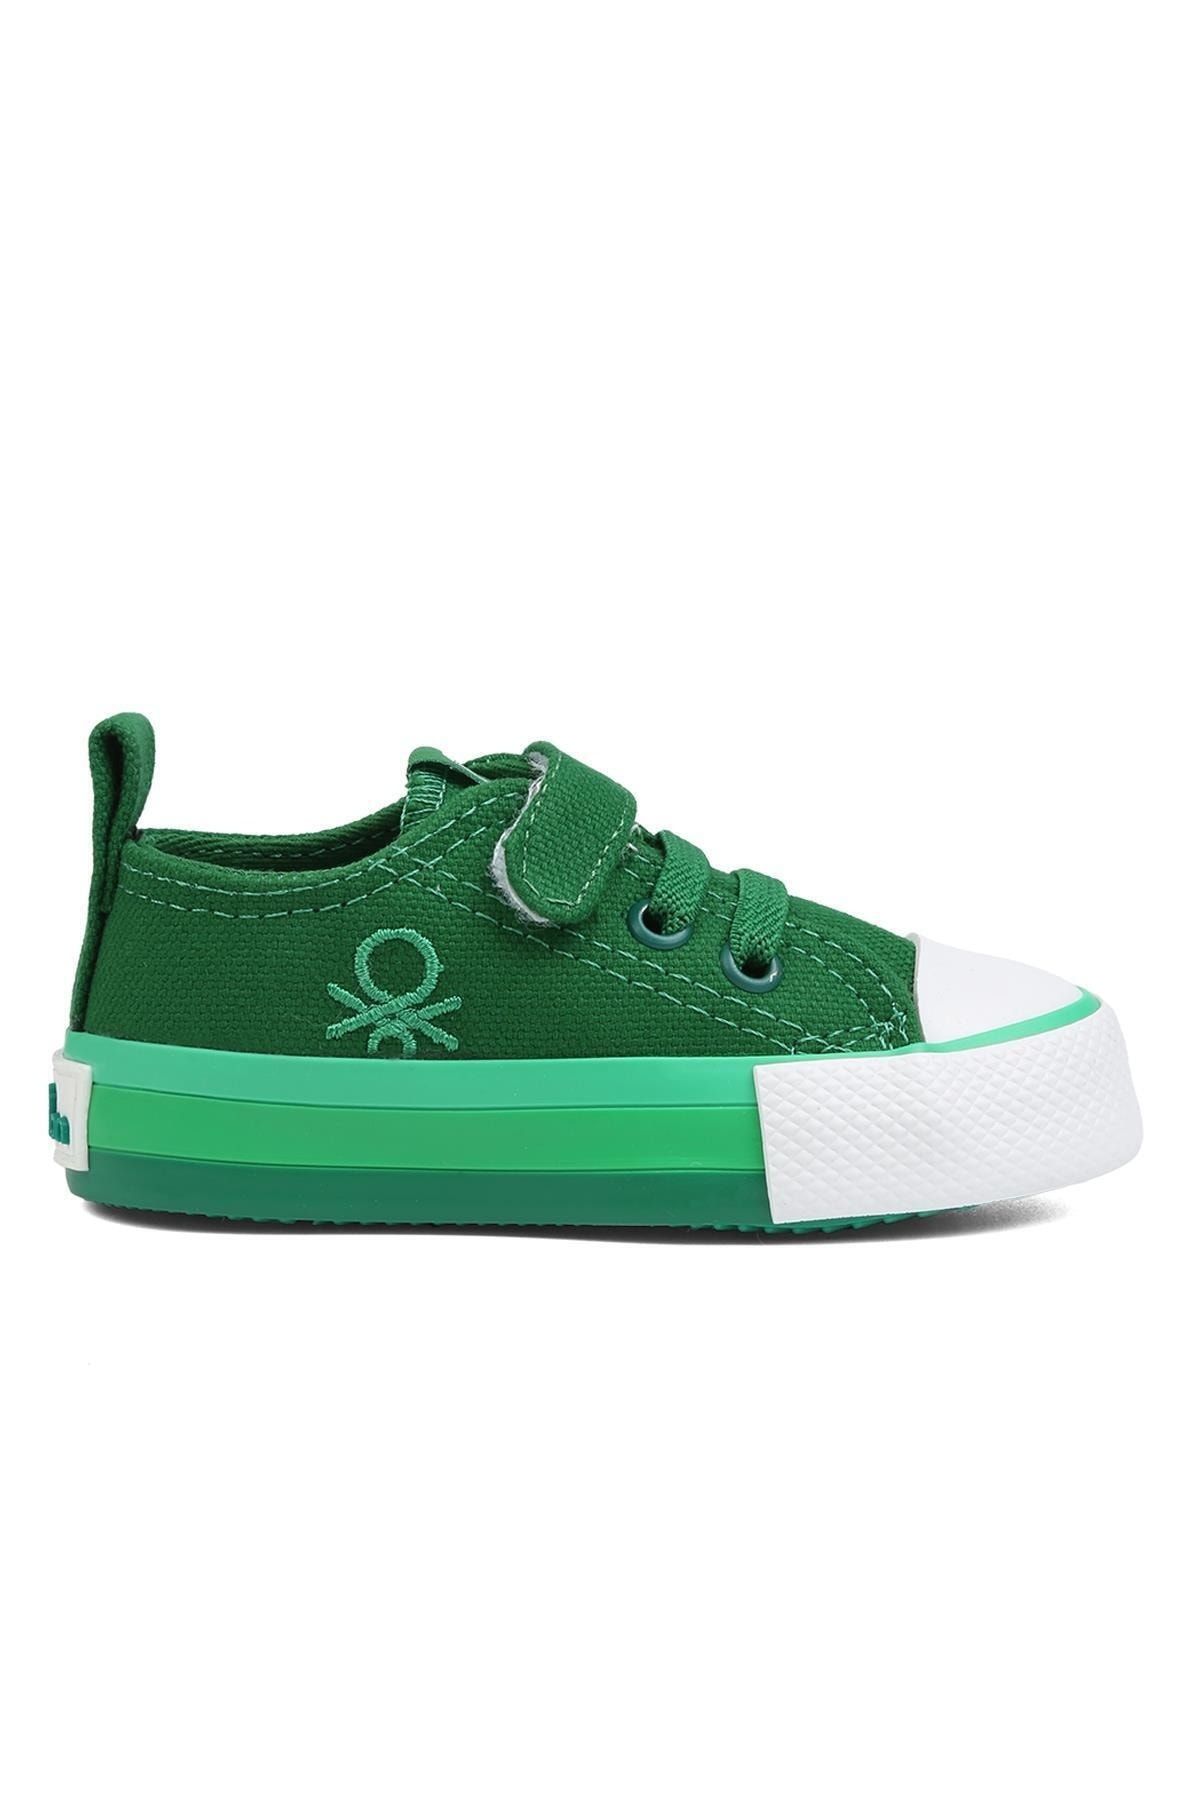 Benetton ® | BN-90652 Yesil - Çocuk Spor Ayakkabı